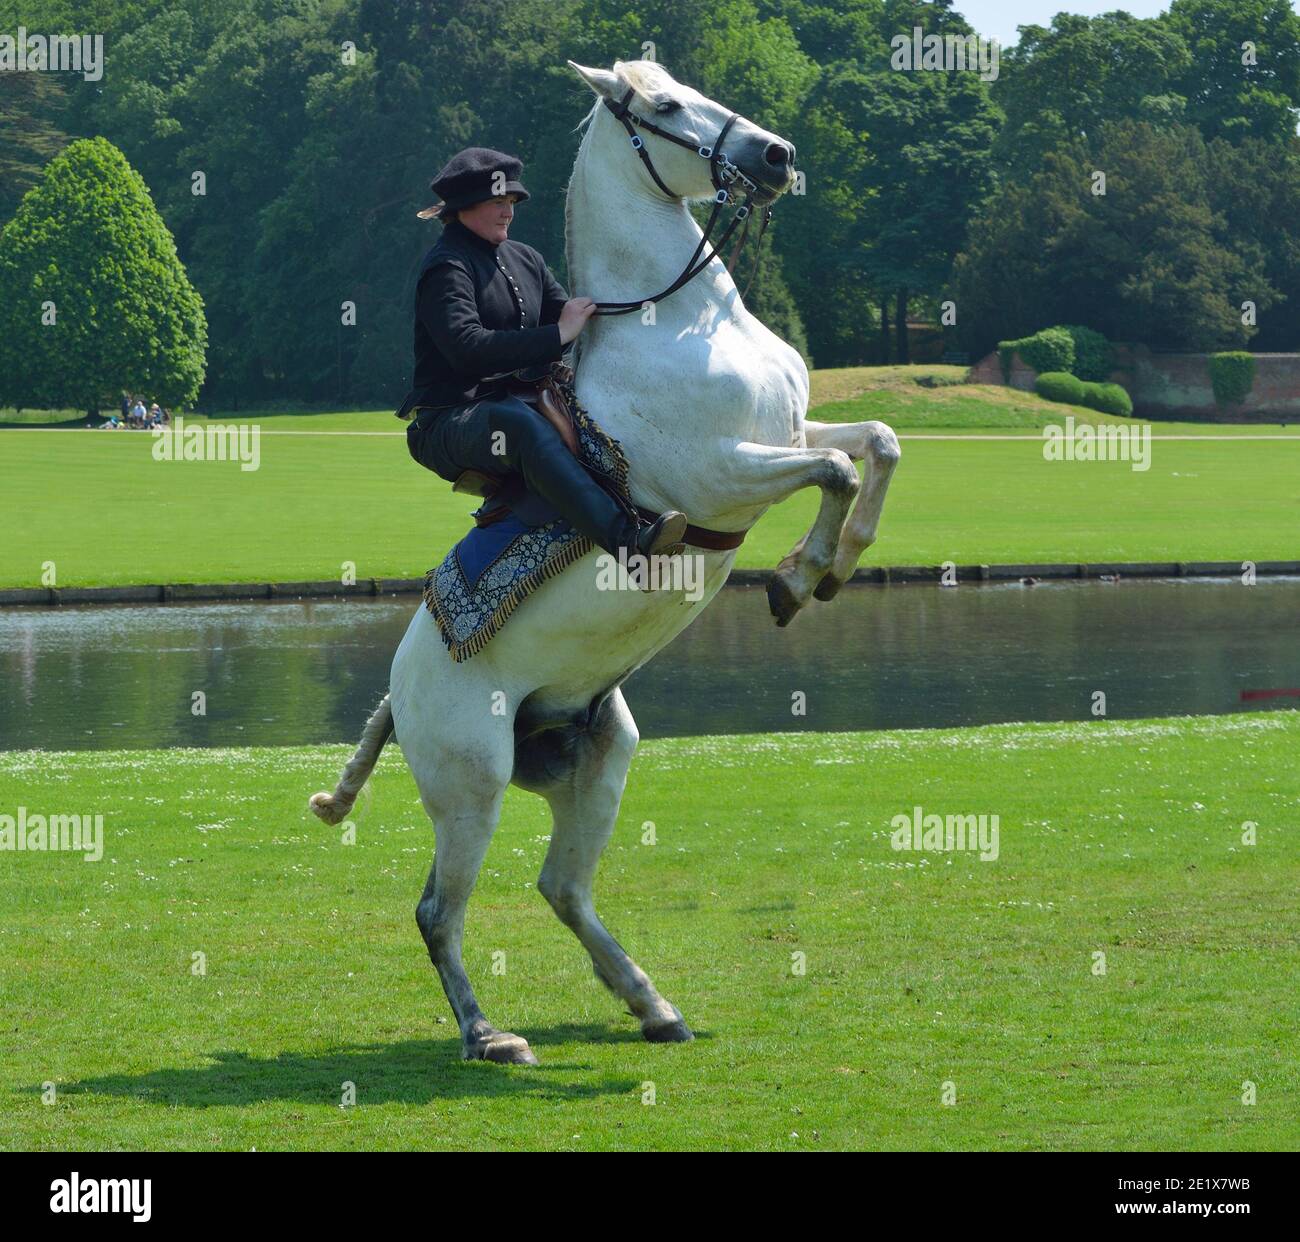 Weißes Pferd aufziehen mit Reiter in elisabethanischen Kostüm. Stockfoto